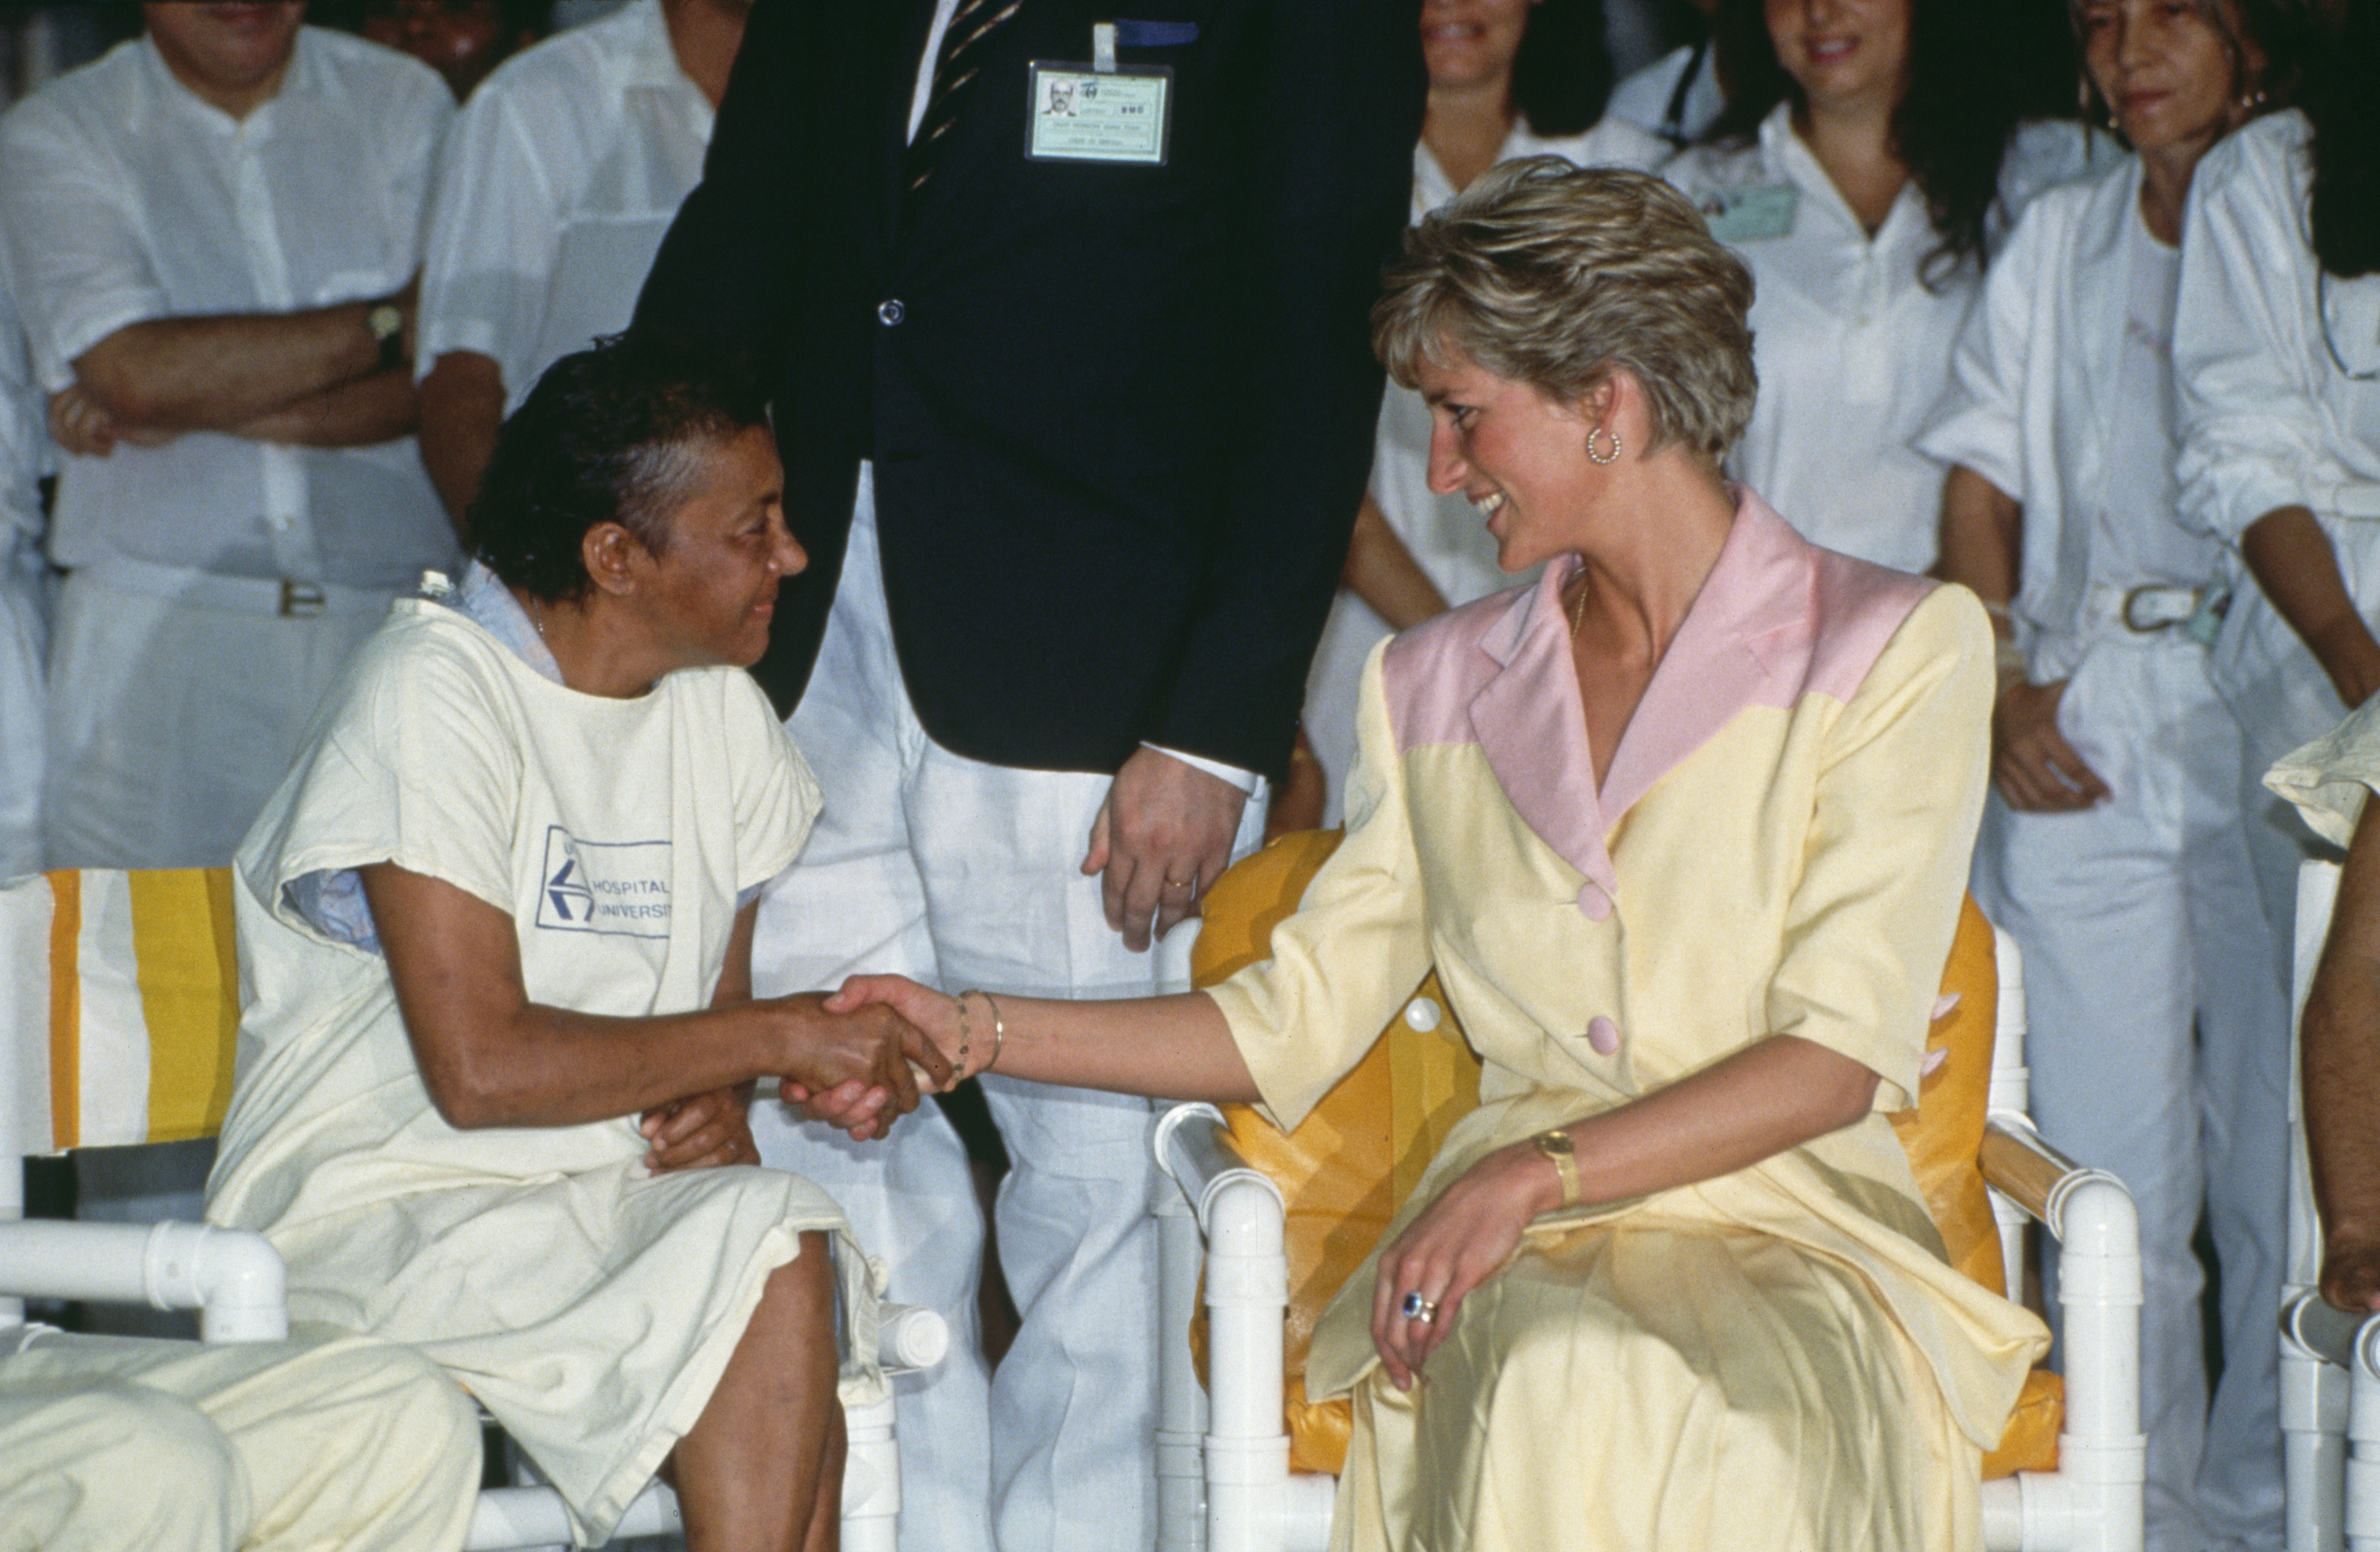 La princesse Diana rend visite à des patients atteints du sida à l'hôpital Universidade de Rio de Janeiro, au Brésil, le 25 avril 1991 | Source : Getty Images